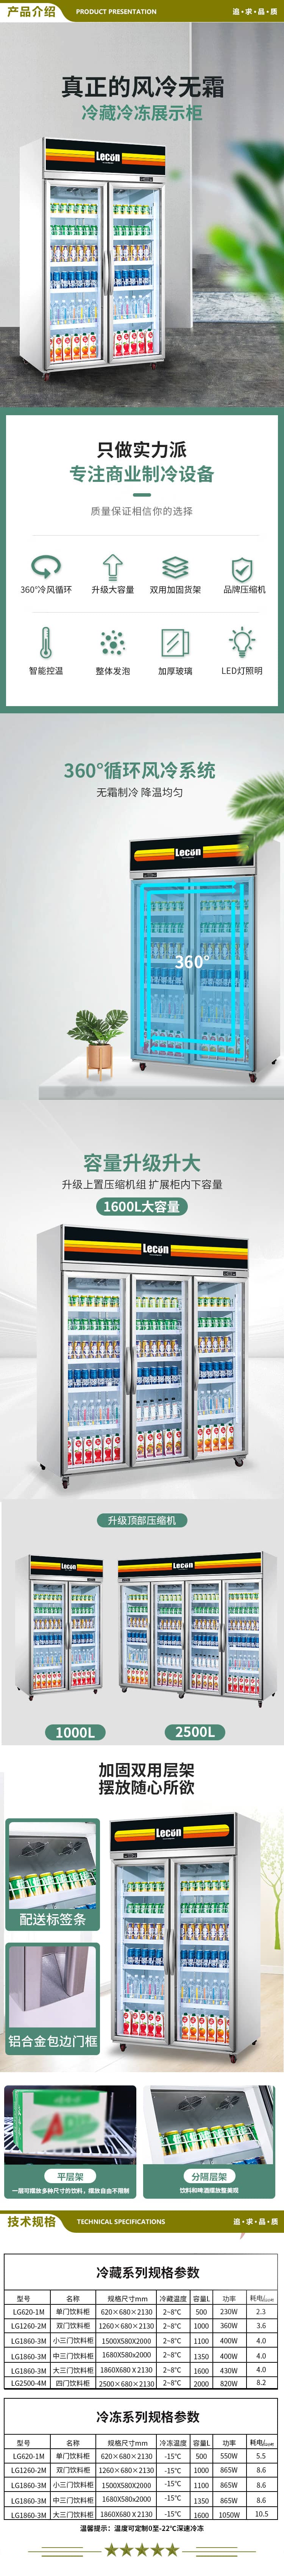 乐创(lecon) L-2500FL-1 超市冰柜商用展示柜冷藏风冷饮料柜士多店便利店冰箱水果冷藏柜保鲜柜啤酒柜  2.jpg